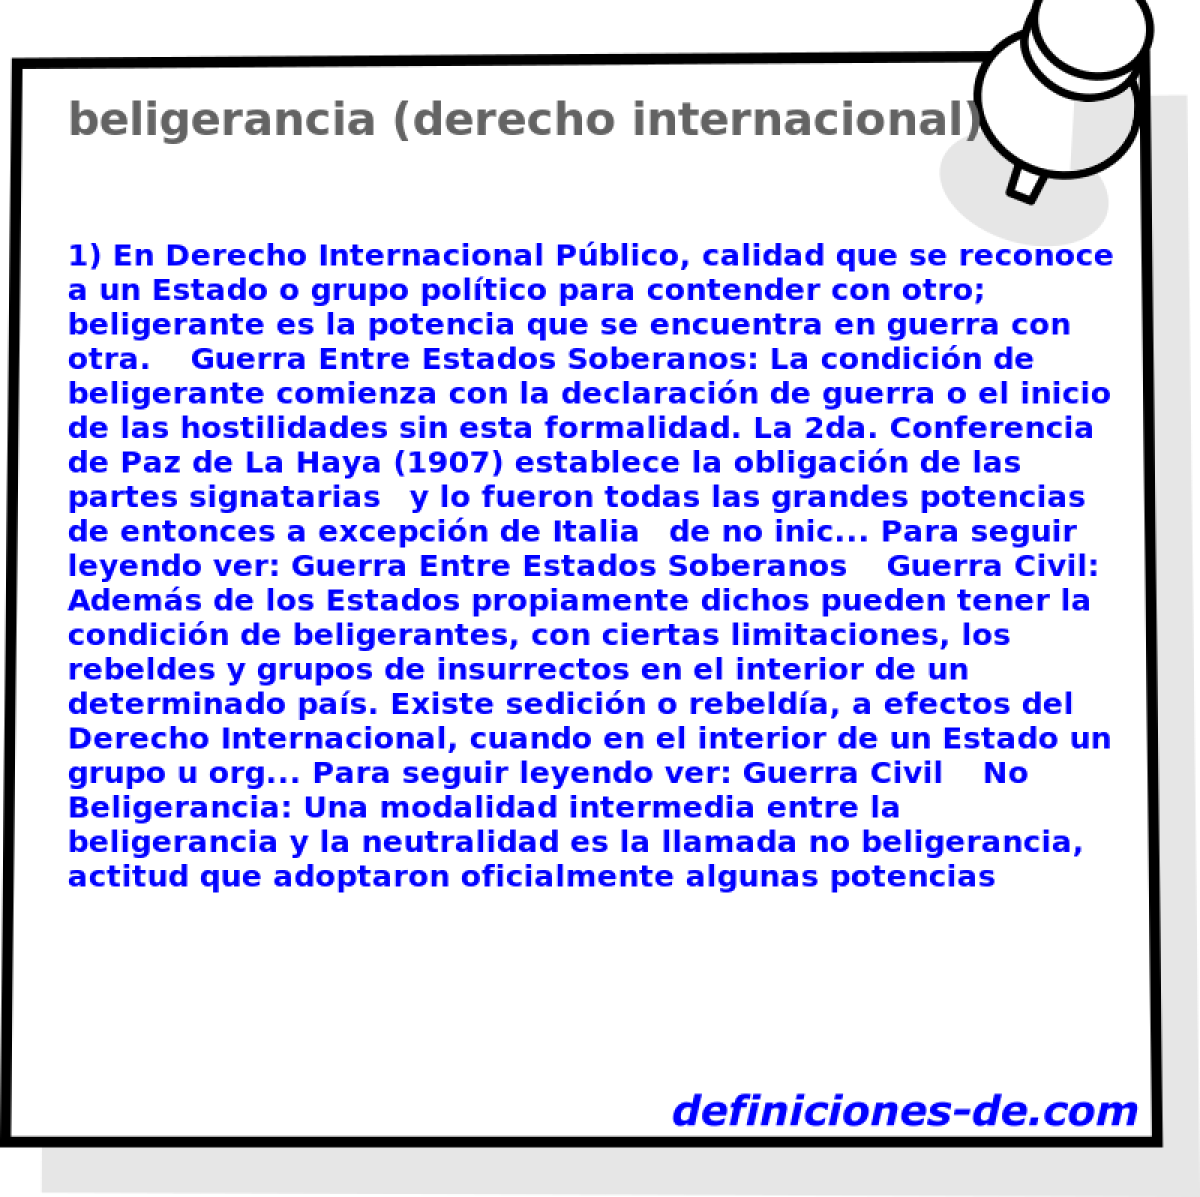 beligerancia (derecho internacional) 